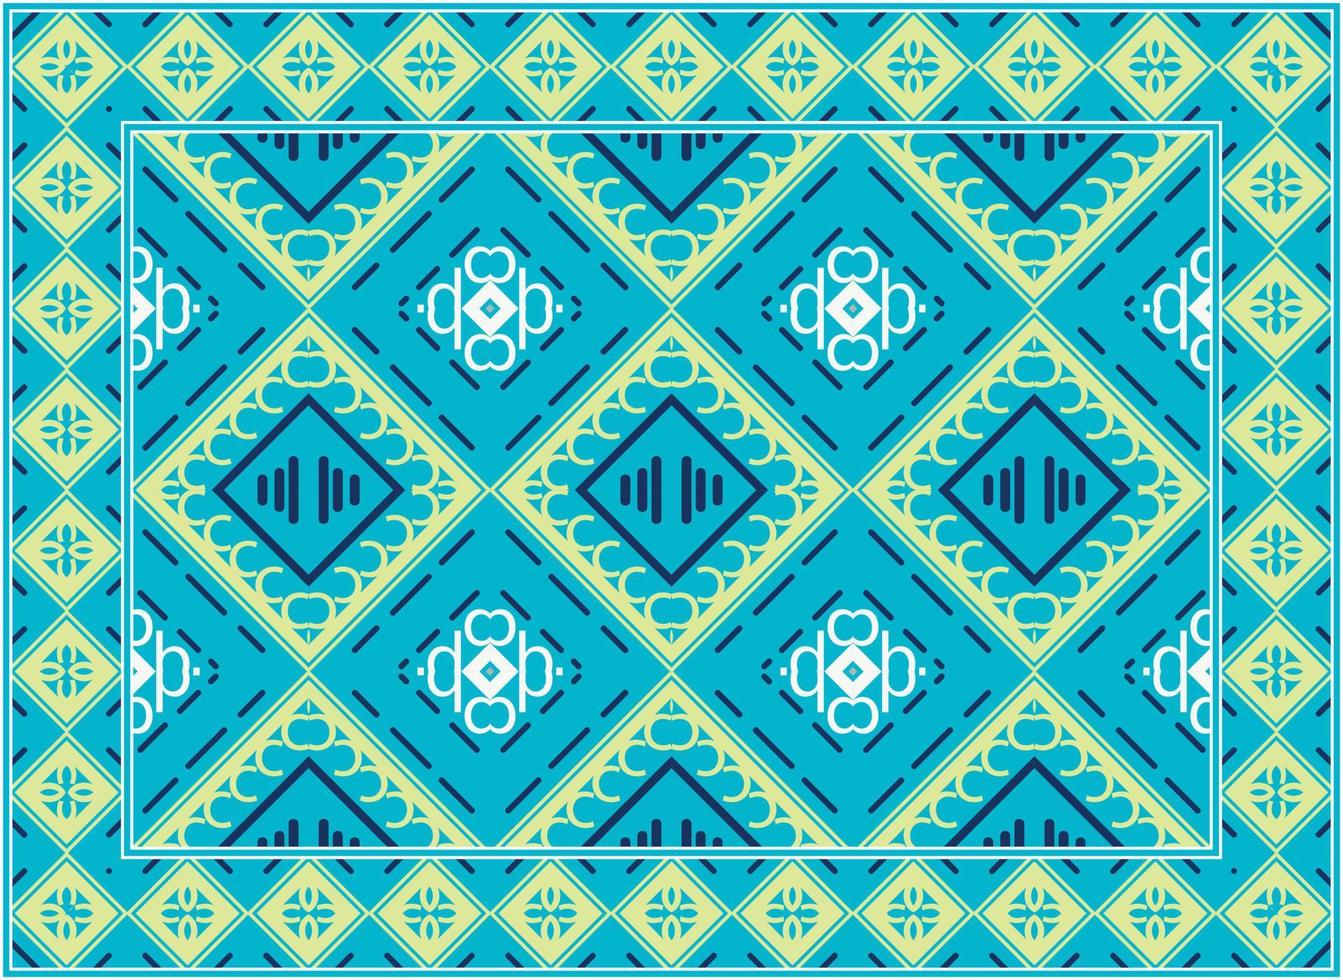 modern oosters tapijten, Afrikaanse etnisch naadloos patroon Scandinavisch Perzisch tapijt modern Afrikaanse etnisch aztec stijl ontwerp voor afdrukken kleding stof tapijten, handdoeken, zakdoeken, sjaals tapijt, vector